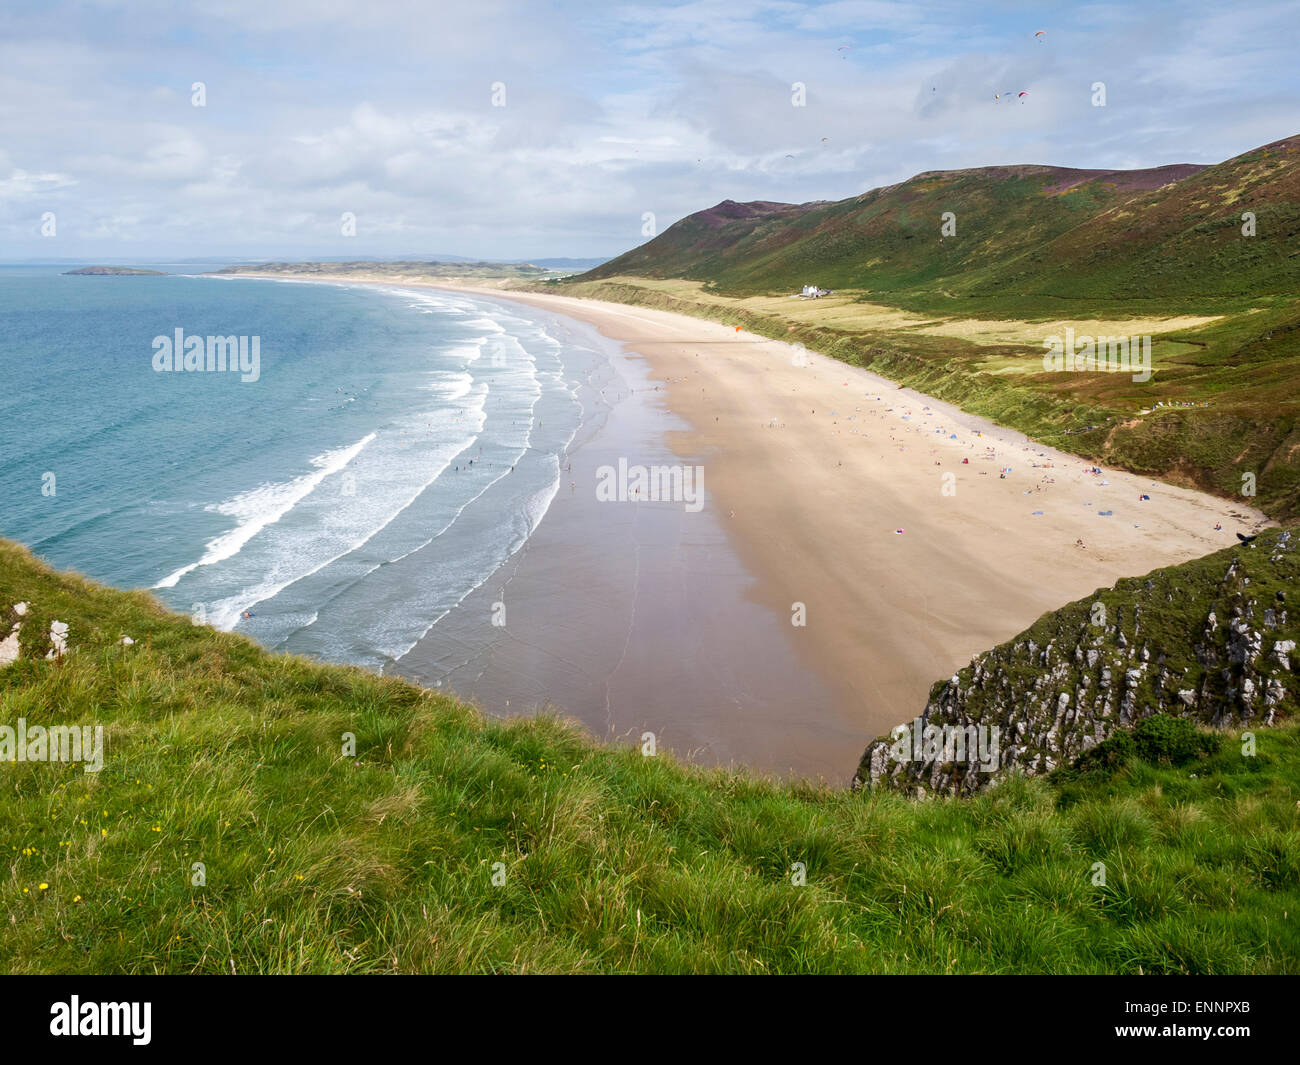 Afficher le long de la plage de Rhossili Bay, Gower, au Pays de Galles Banque D'Images